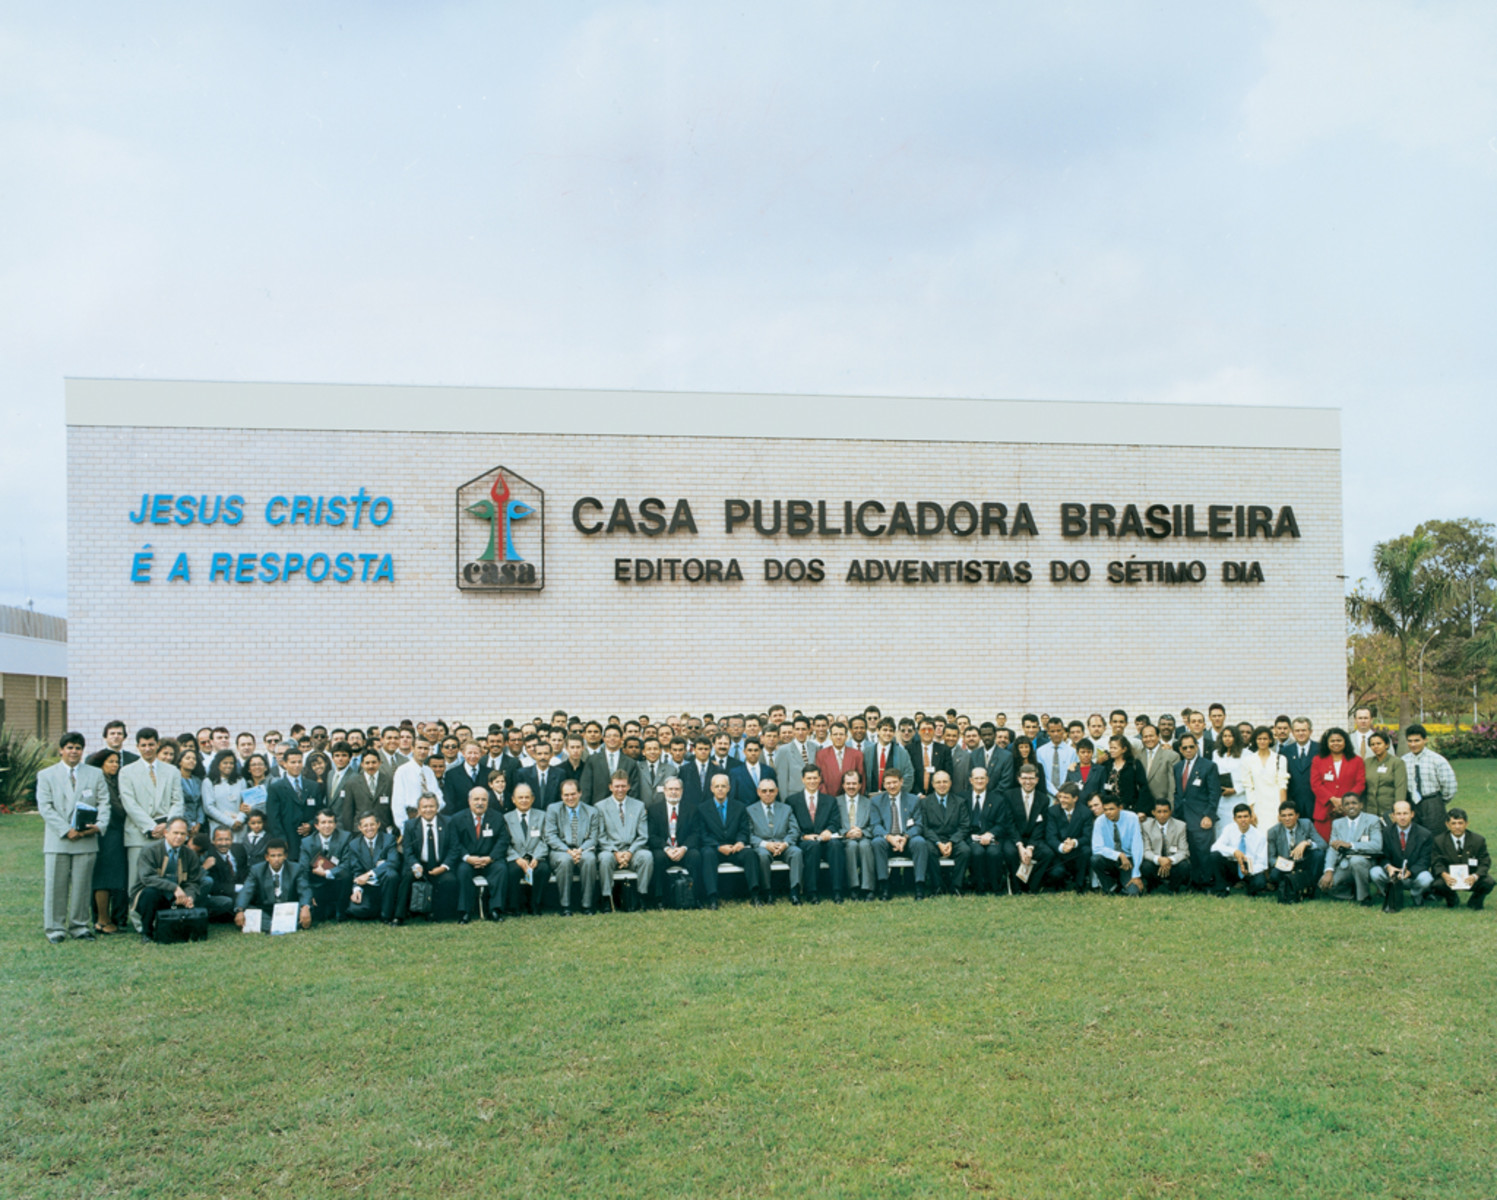 CPB - Casa Publicadora Brasileira - Editora Adventista do Sétimo Dia